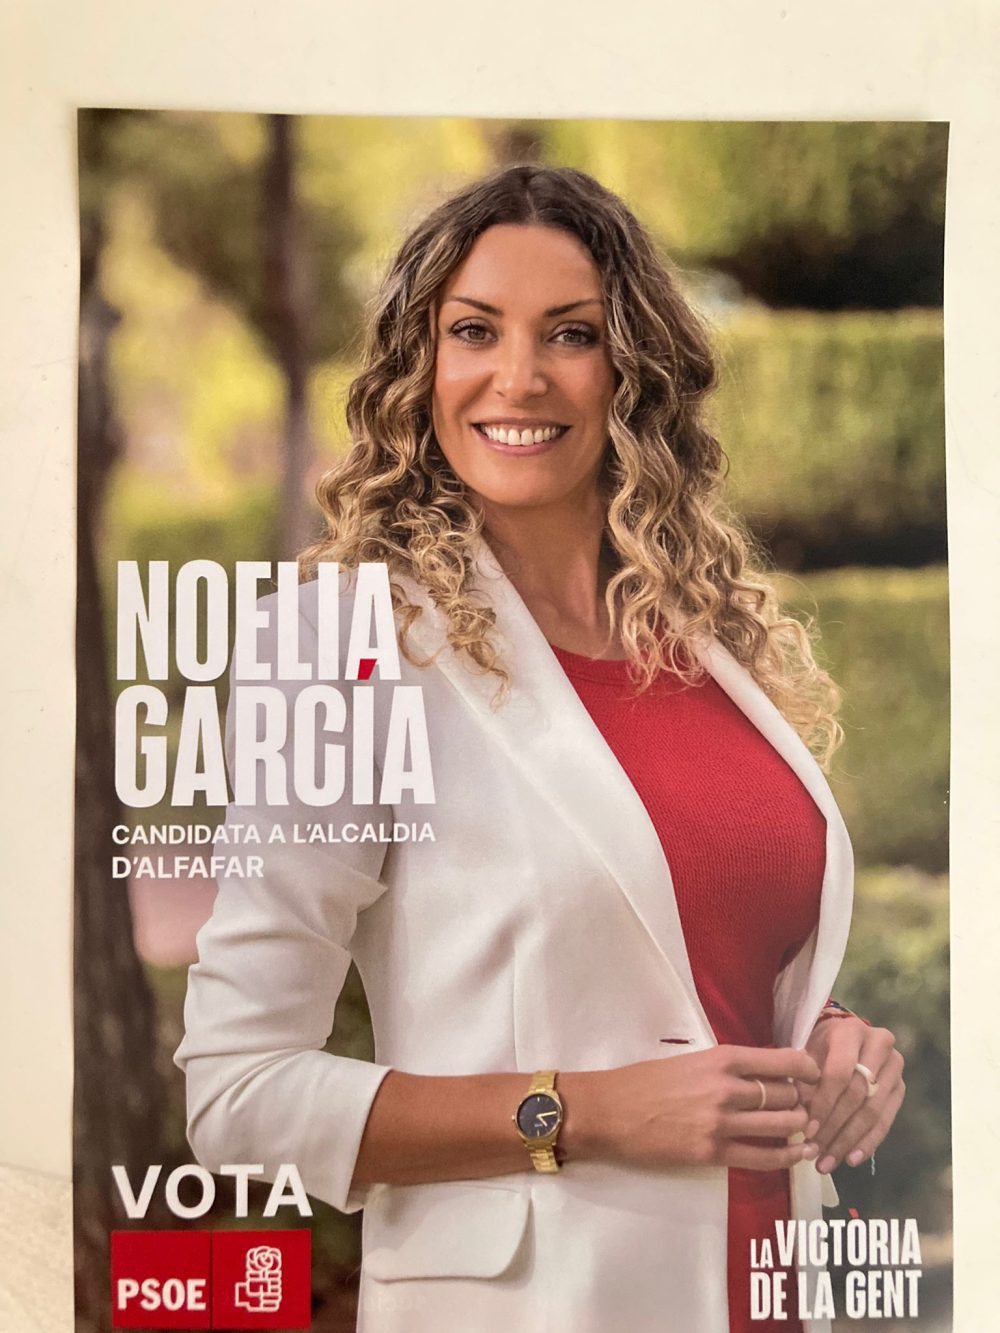 Noelia no necesita comprar votos